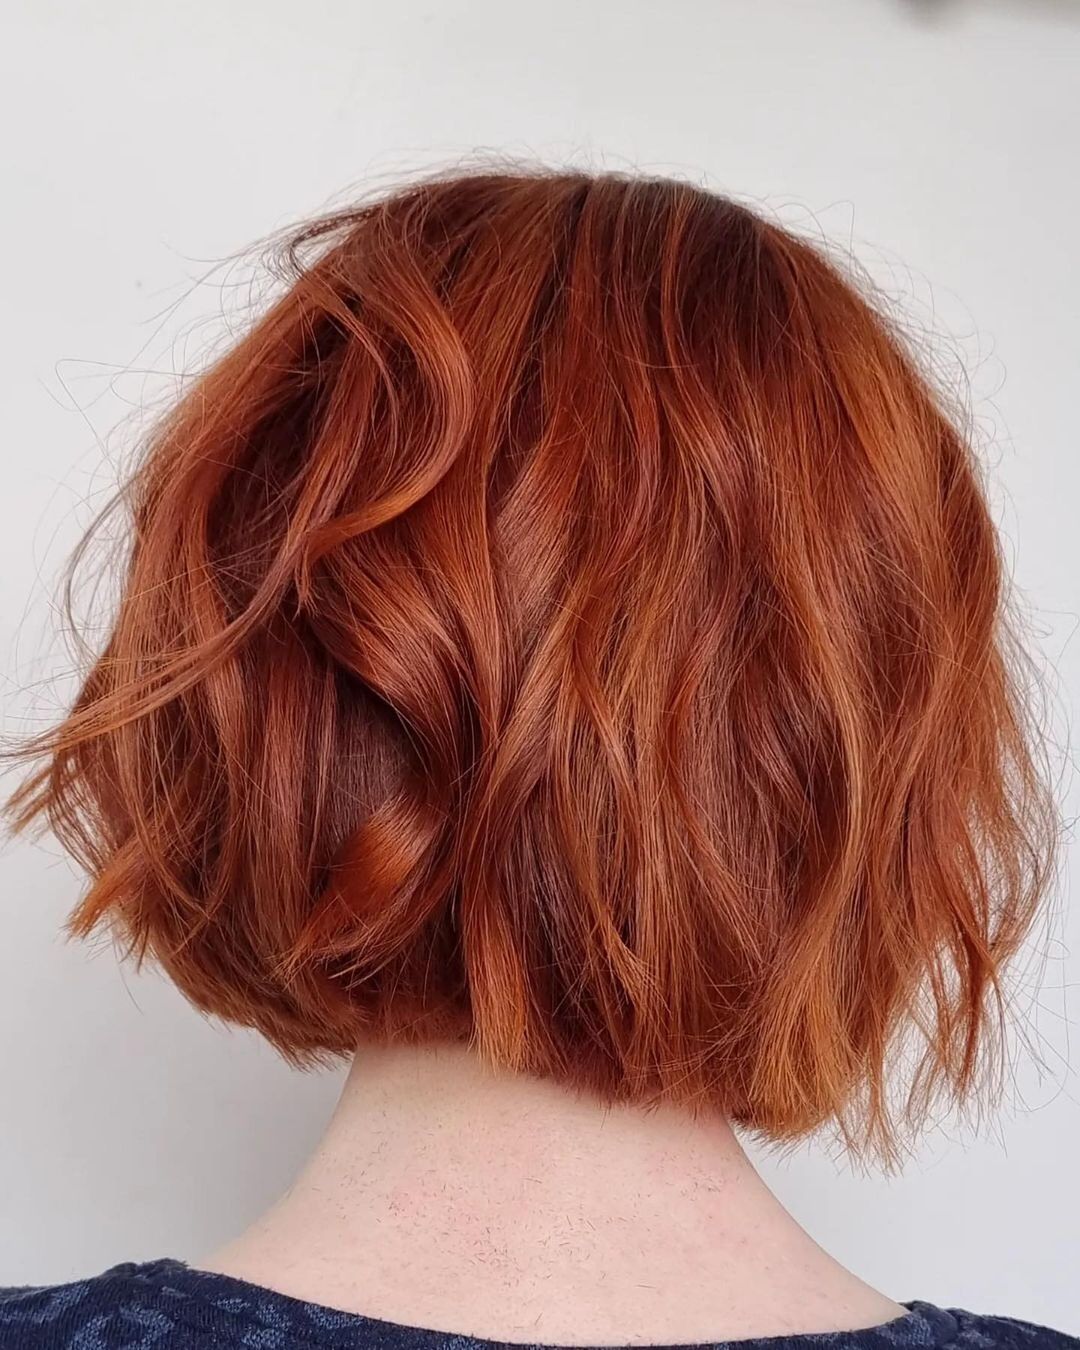 uma mulher com um corte de cabelo ruivo e curto em tons de cobre